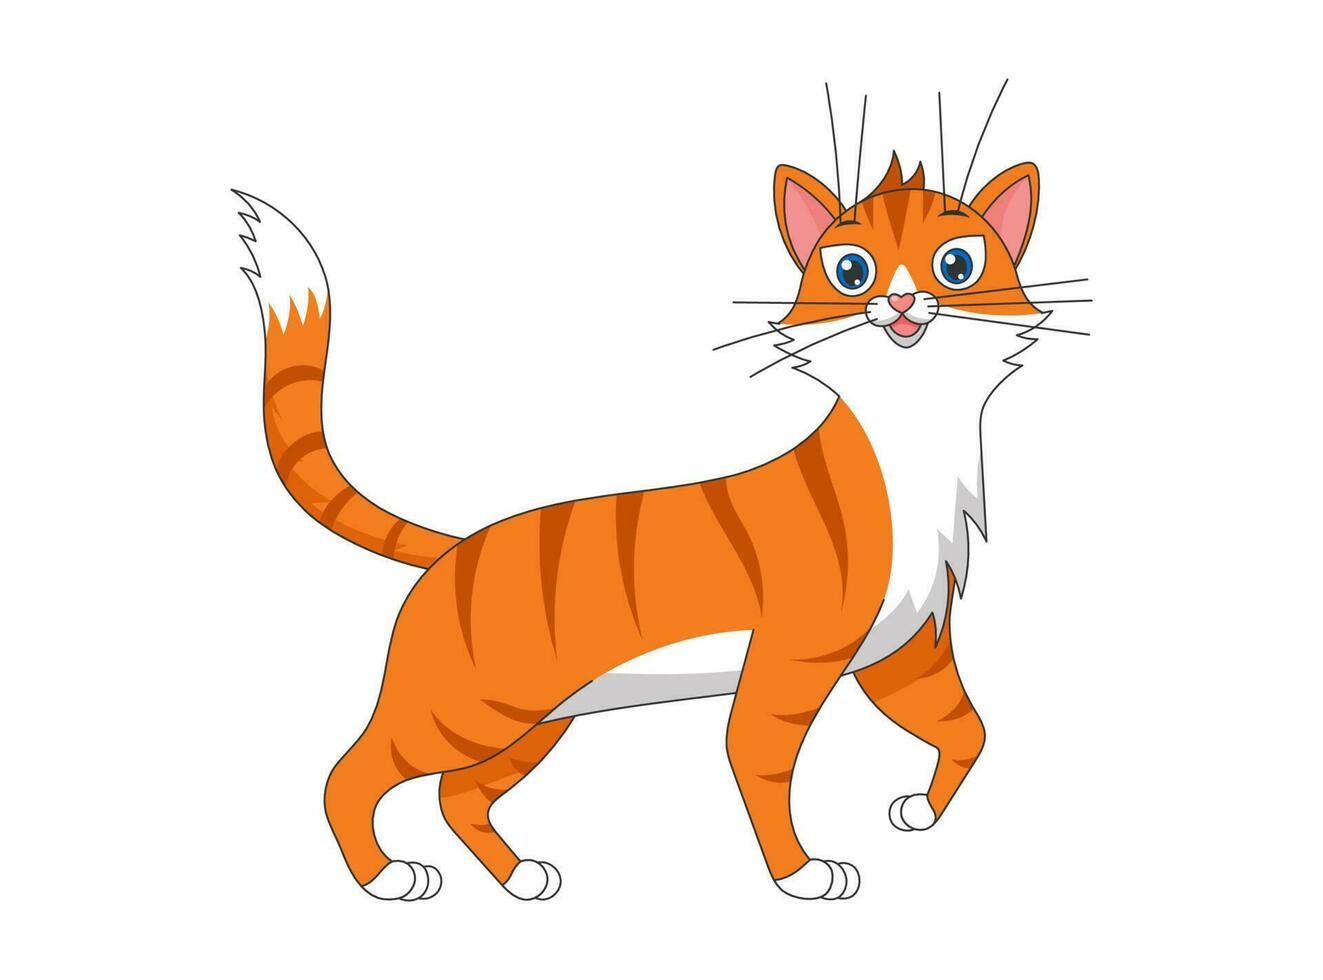 süß Karikatur komisch rot gestreift Katze. nett Zeichnung lächelnd Baby Tier Haustier Kätzchen spielerisch. kreativ Grafik Hand gezeichnet drucken. Vektor eps Illustration